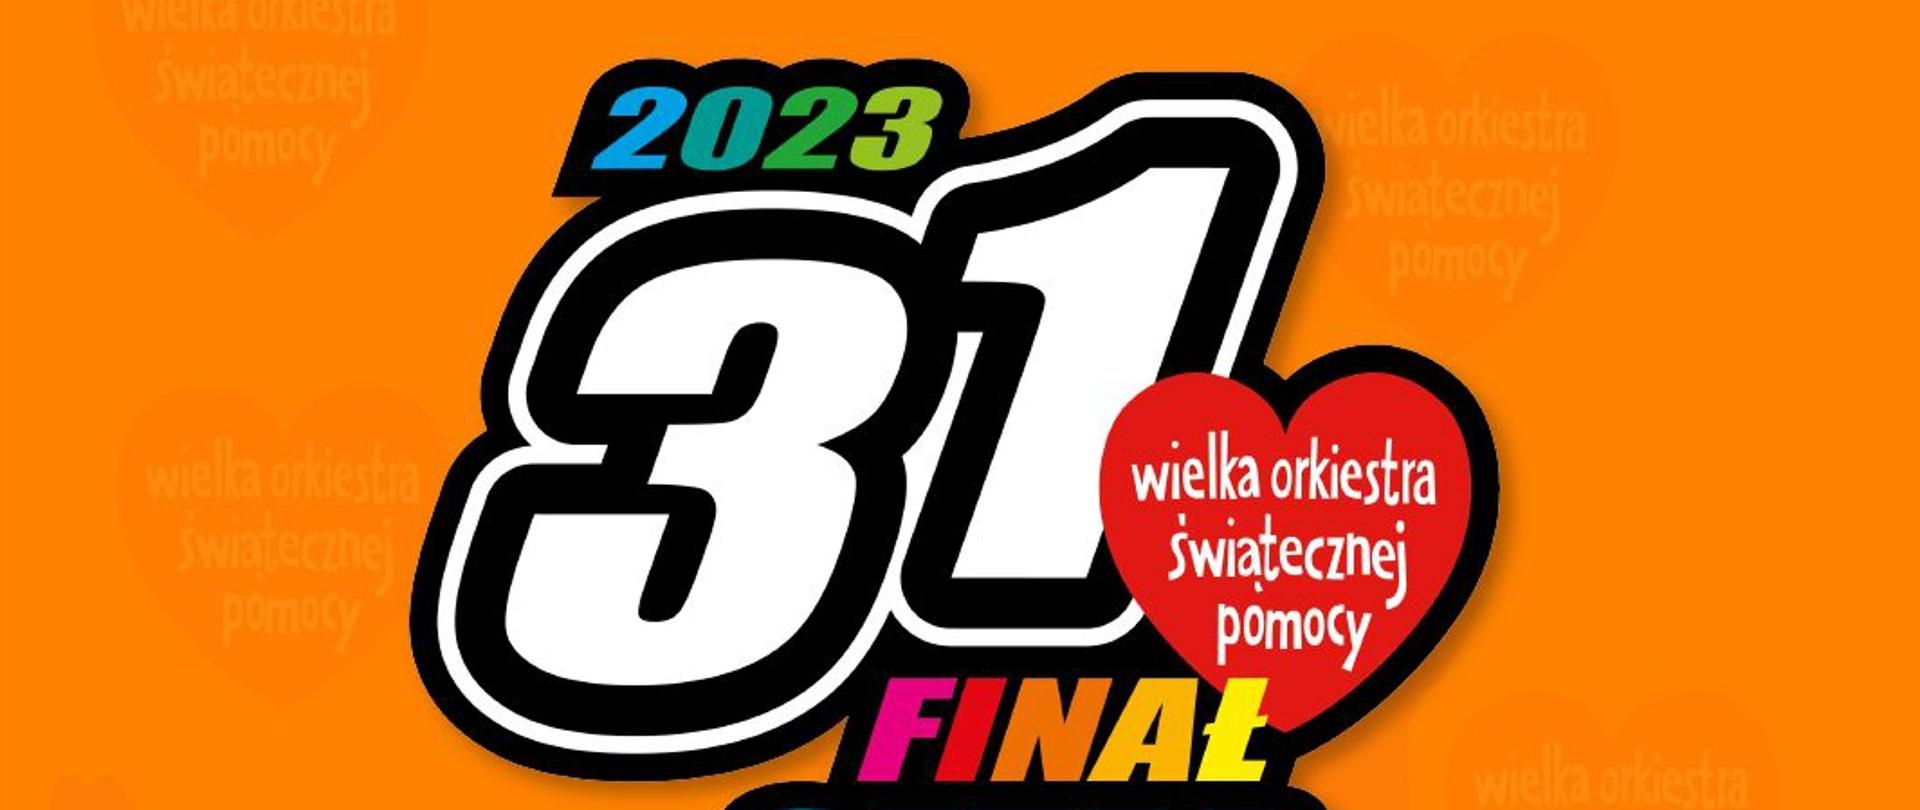 Plakat przedstawia logo 31. finału Wielkiej Orkiestry Świątecznej Pomocy 2023, sztab w Krośnie. Na pomarańczowym tle kolorowe litery i czerwone serduszko z napisem Wielka Orkiestra Świątecznej Pomocy.